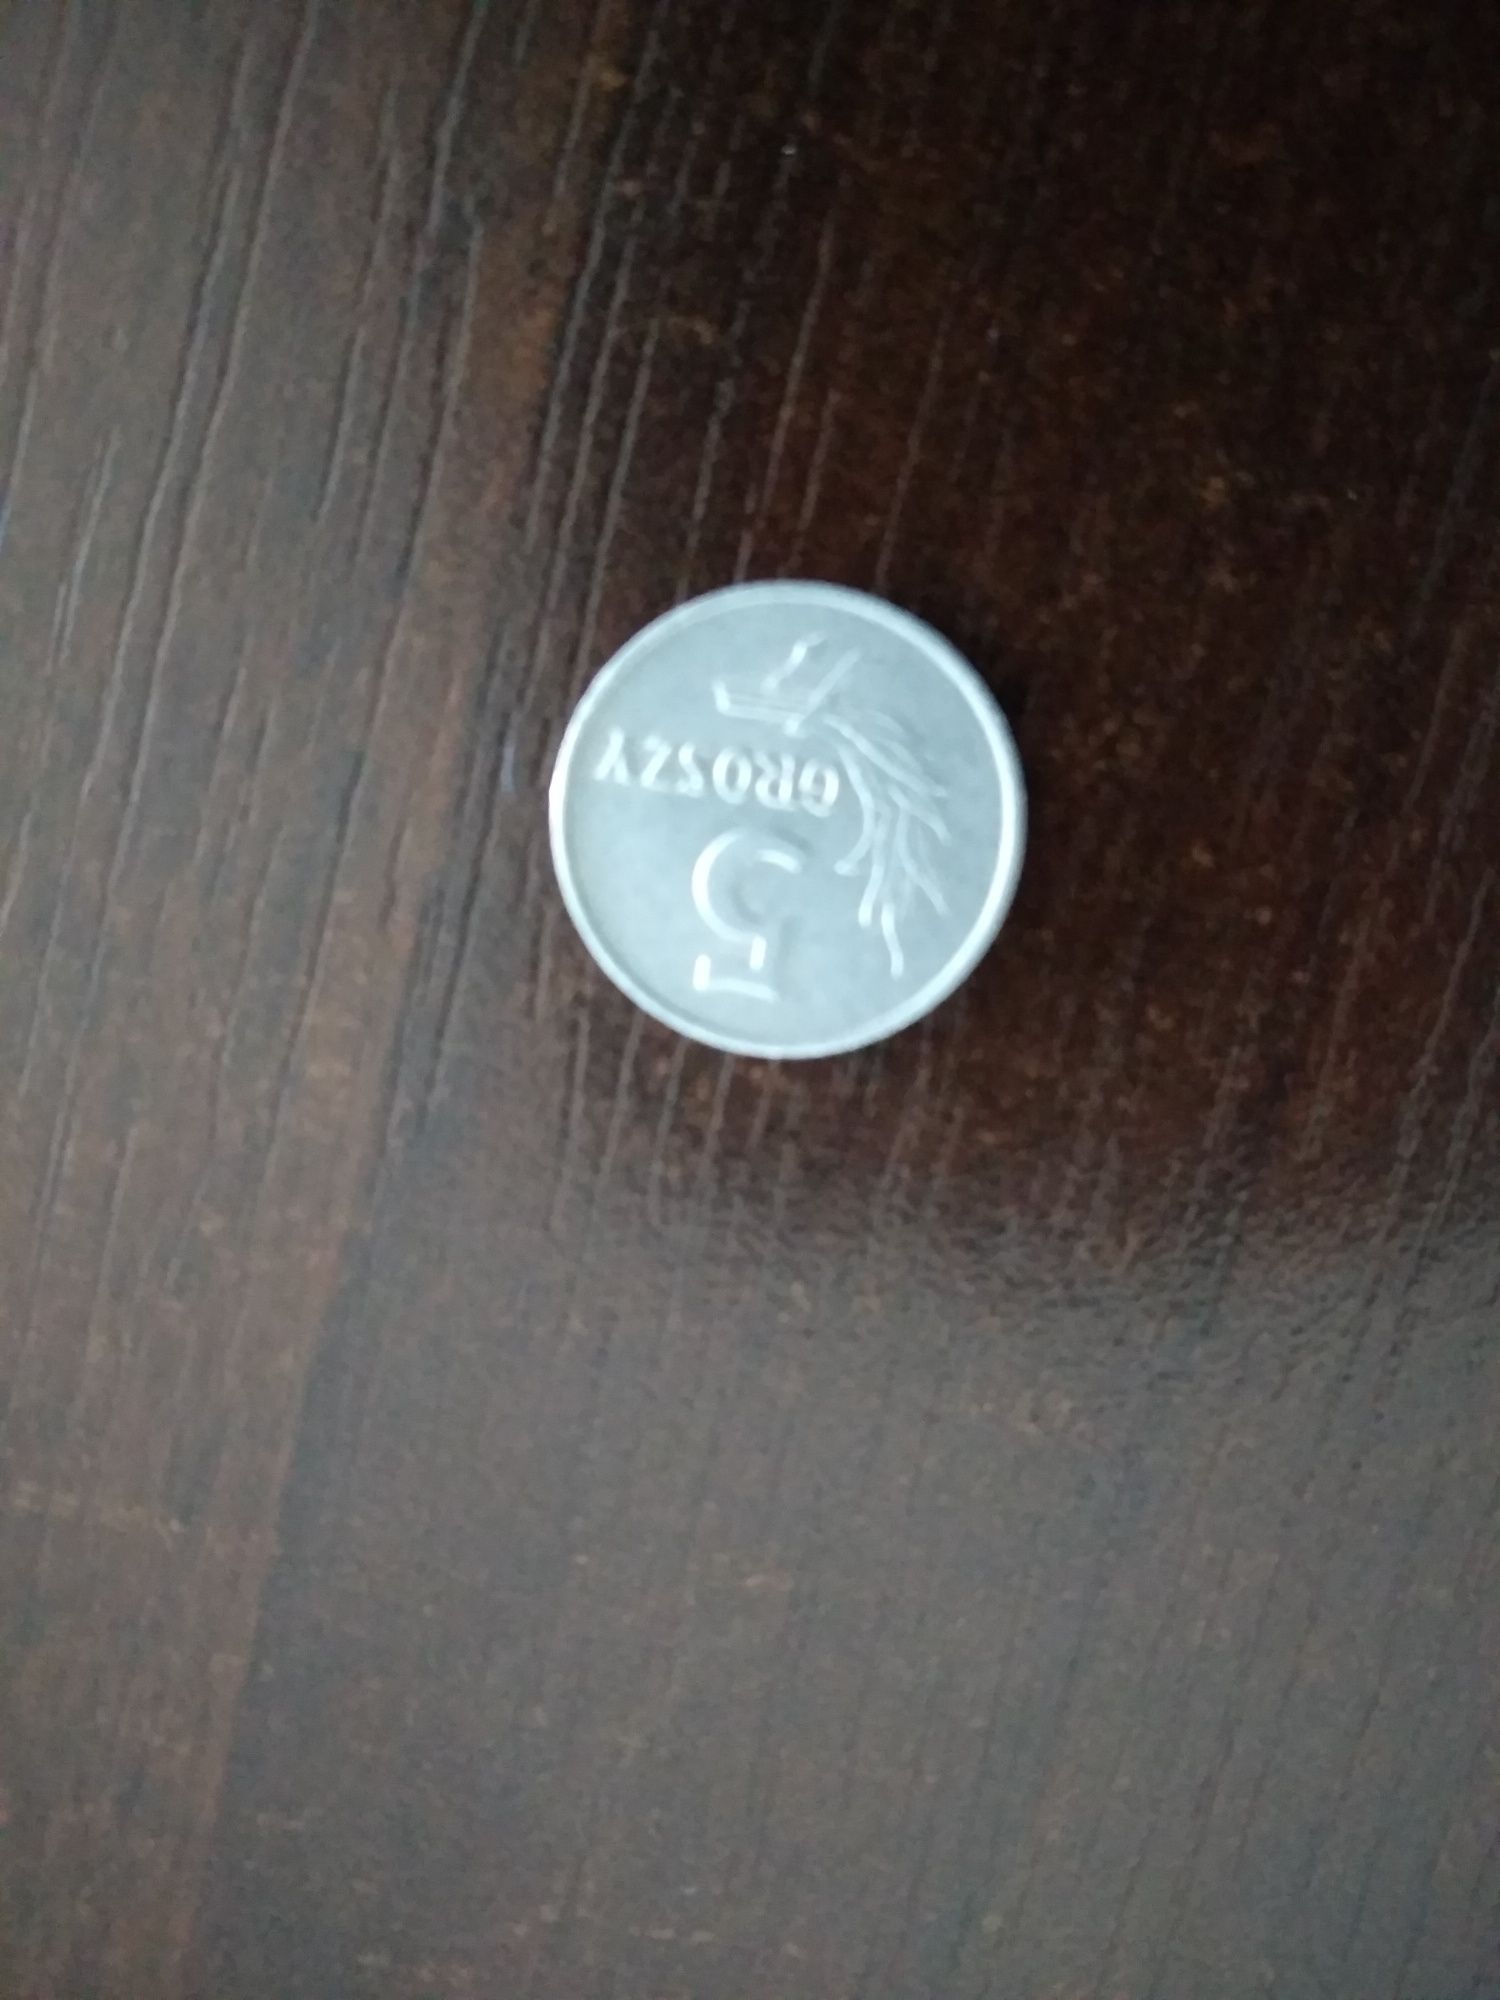 Moneta 5 groszy 1971 rok